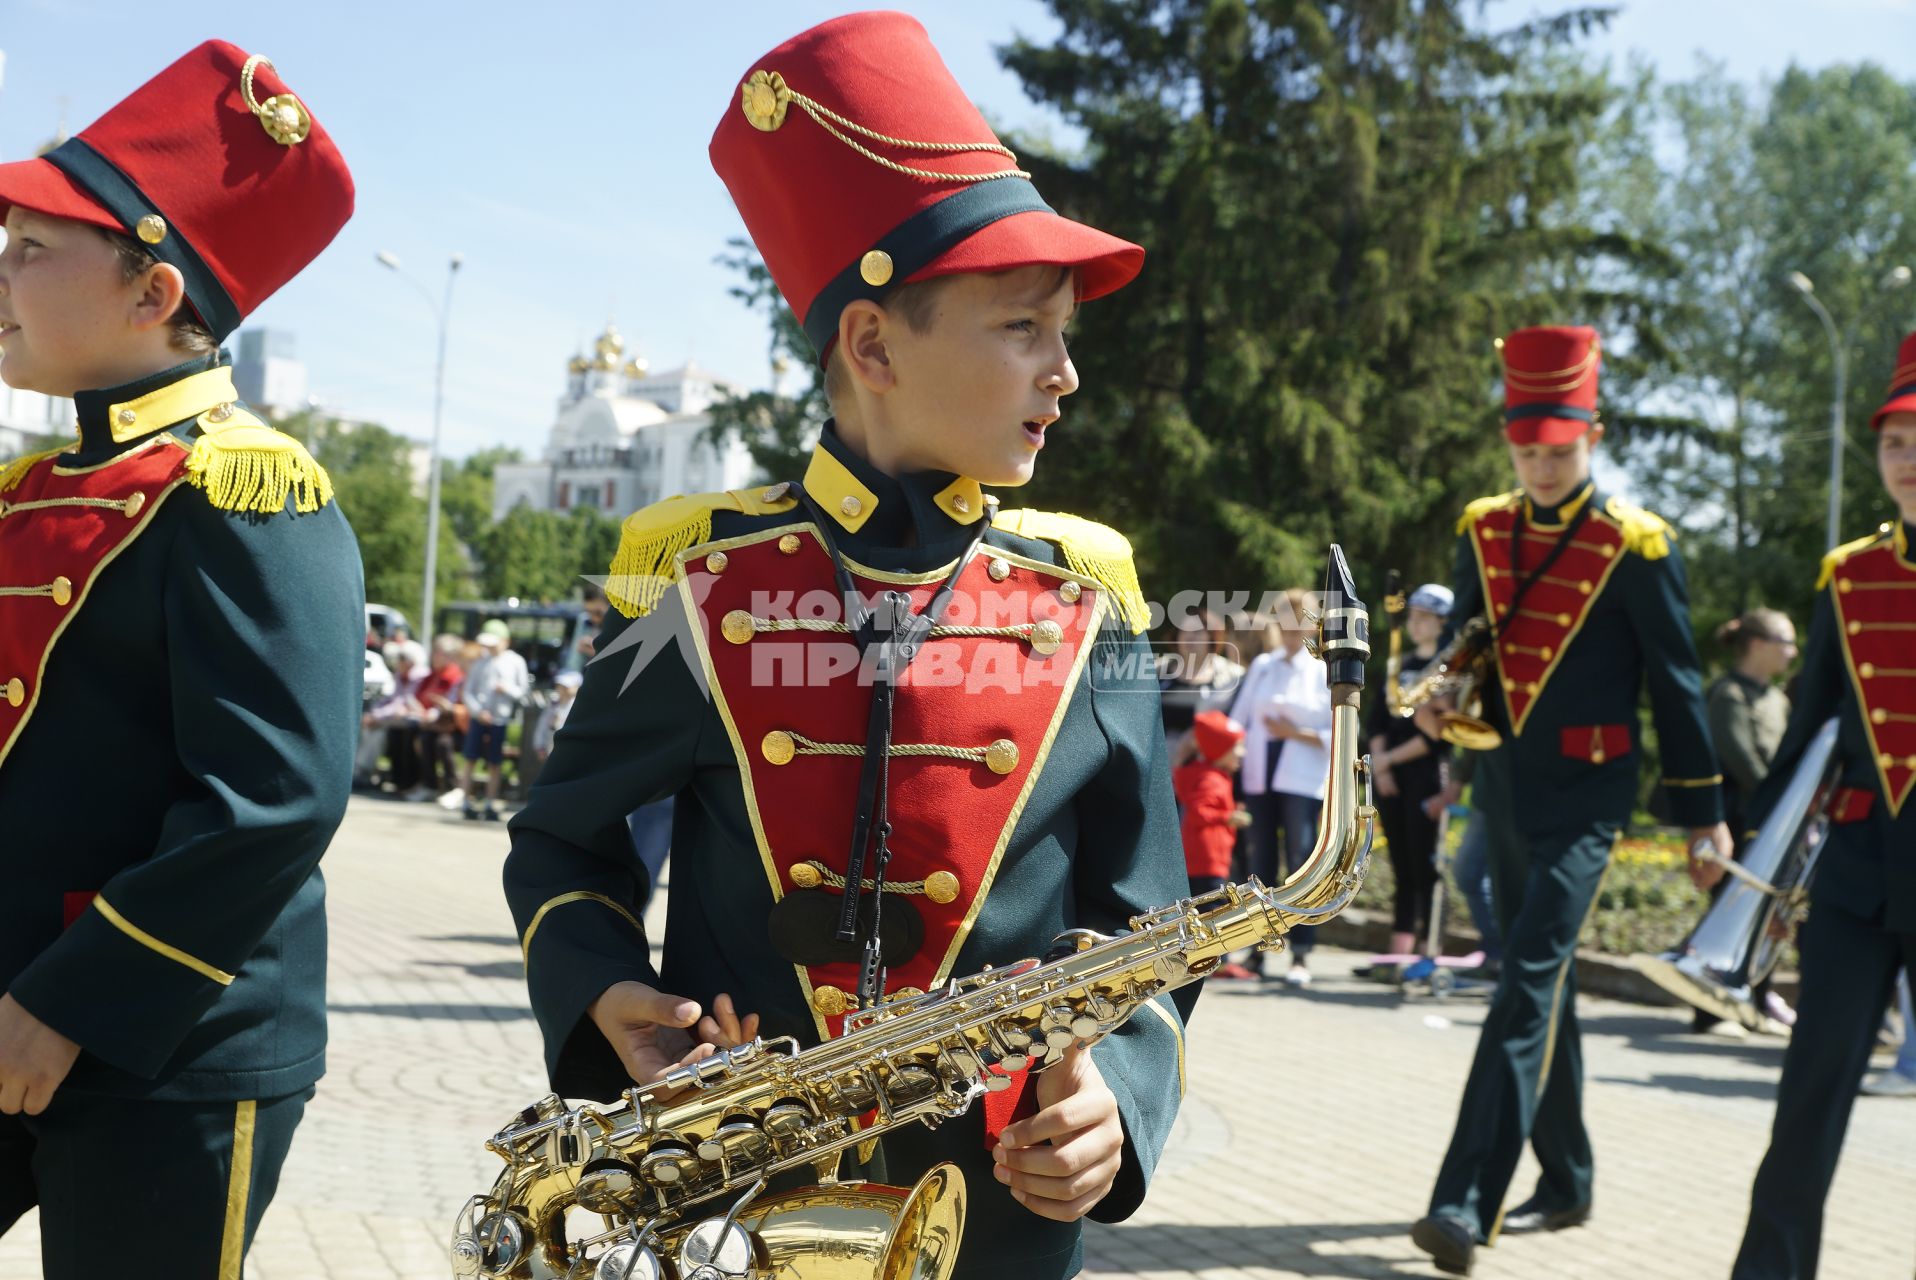 Екатеринбург. Парад 24 духовых оркестров, во время закрытия Уральского культурного форума